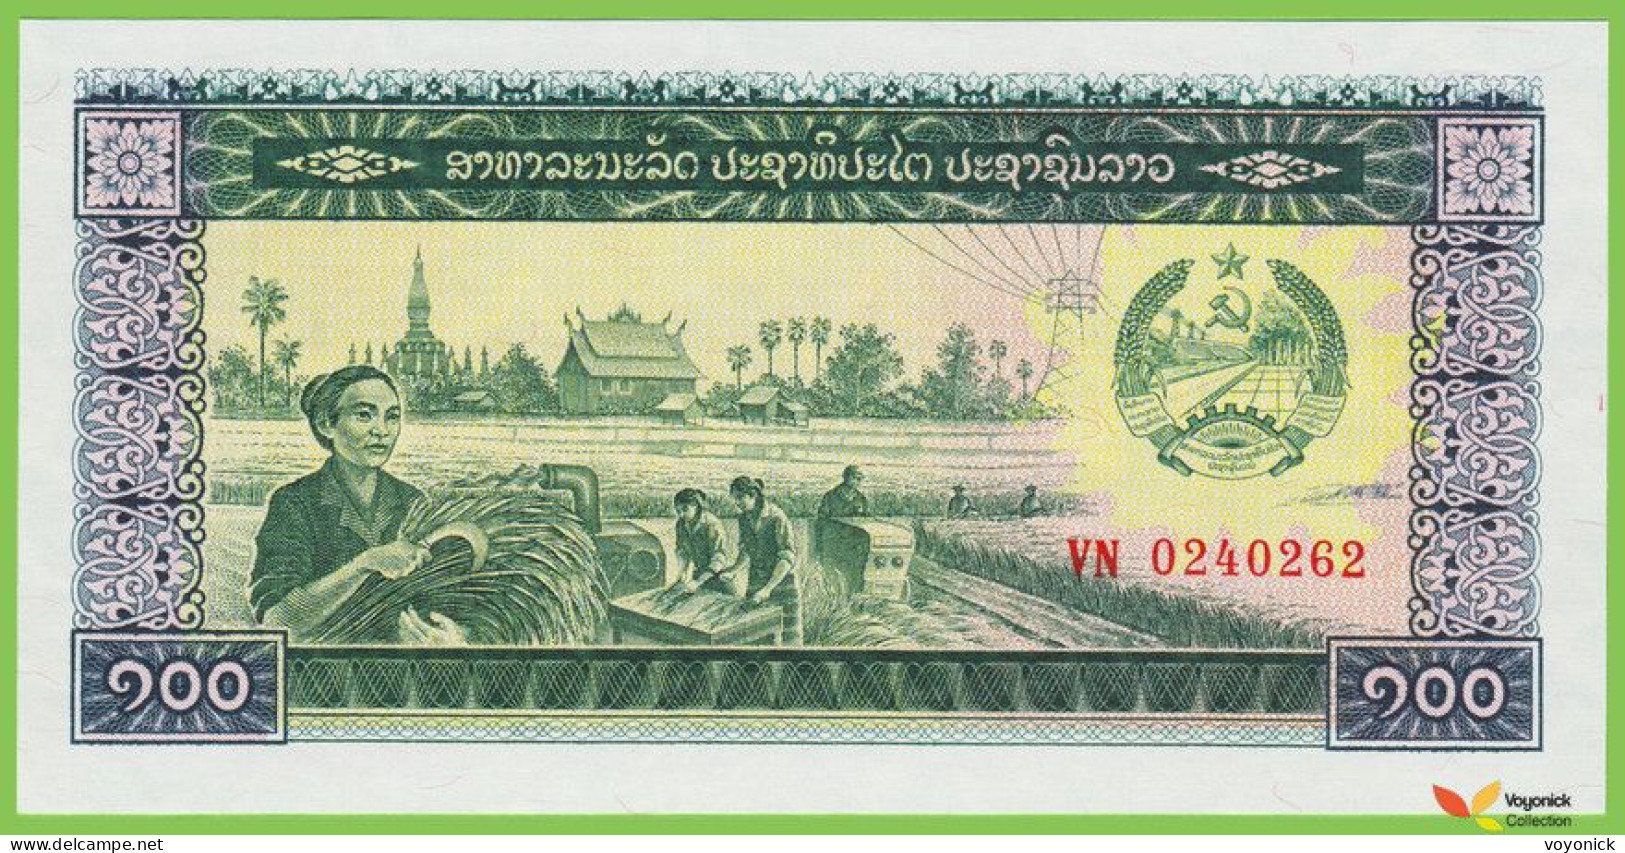 Voyo LAOS 100 Kip ND/1979 P30a B506a VN UNC - Laos